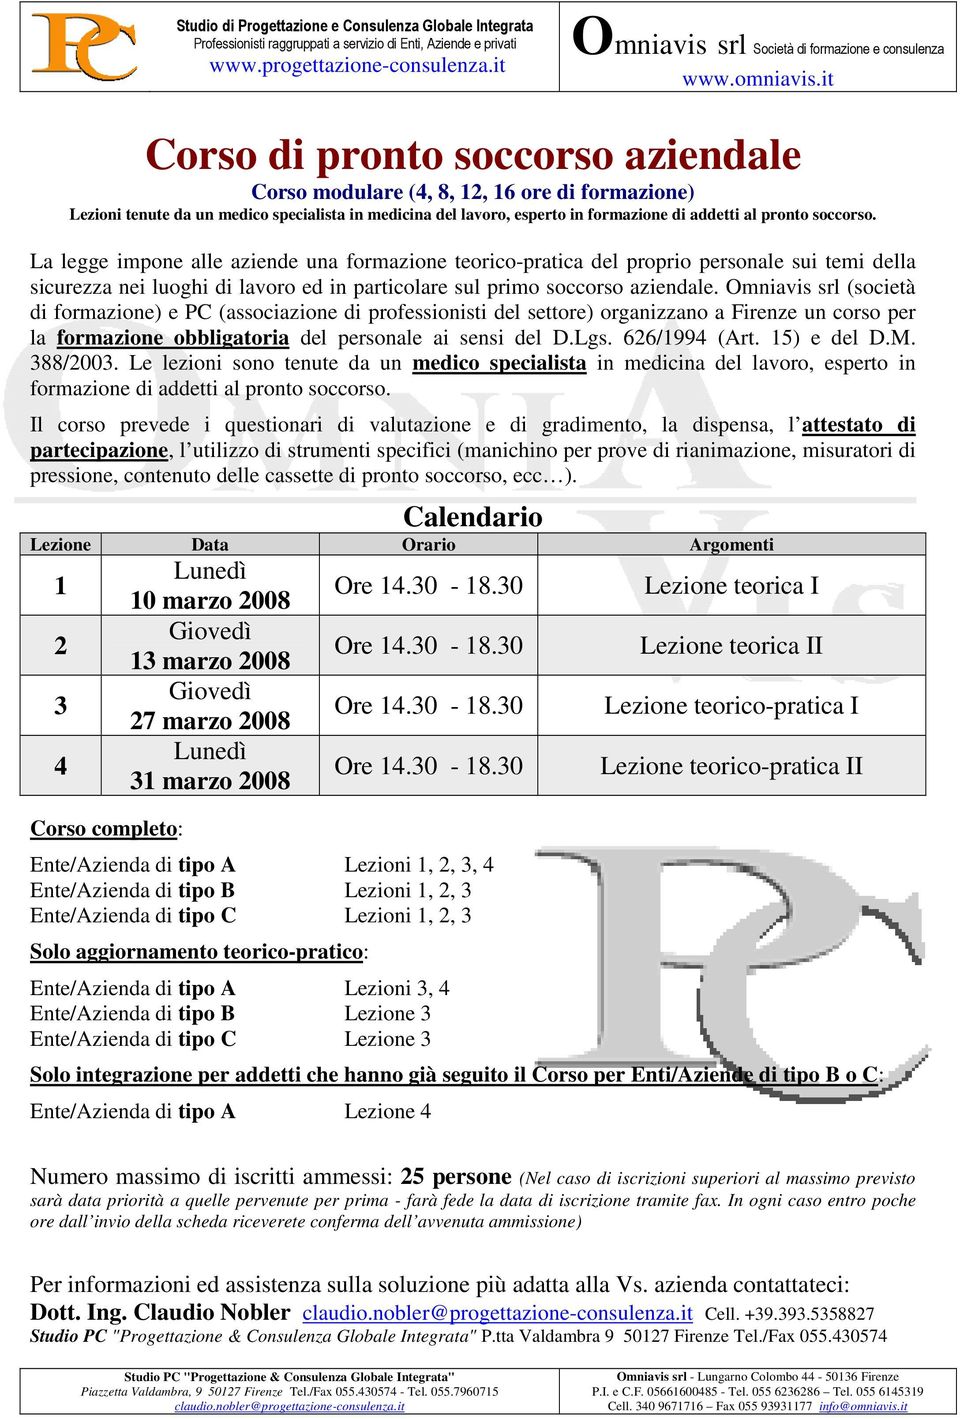 Omniavis srl (società di formazione) e PC (associazione di professionisti del settore) organizzano a Firenze un corso per la formazione obbligatoria del personale ai sensi del D.Lgs. 626/1994 (Art.